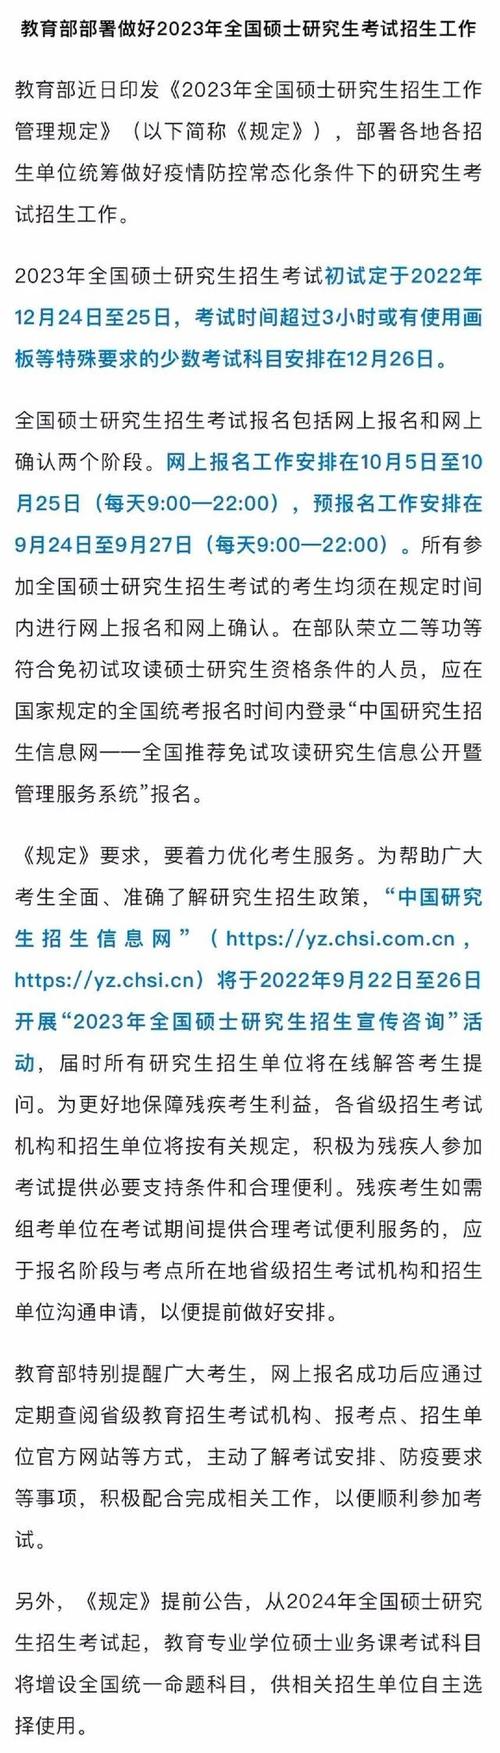 中国研究生招生信息网介绍,2023年全国硕士研究生招生考试初试定于